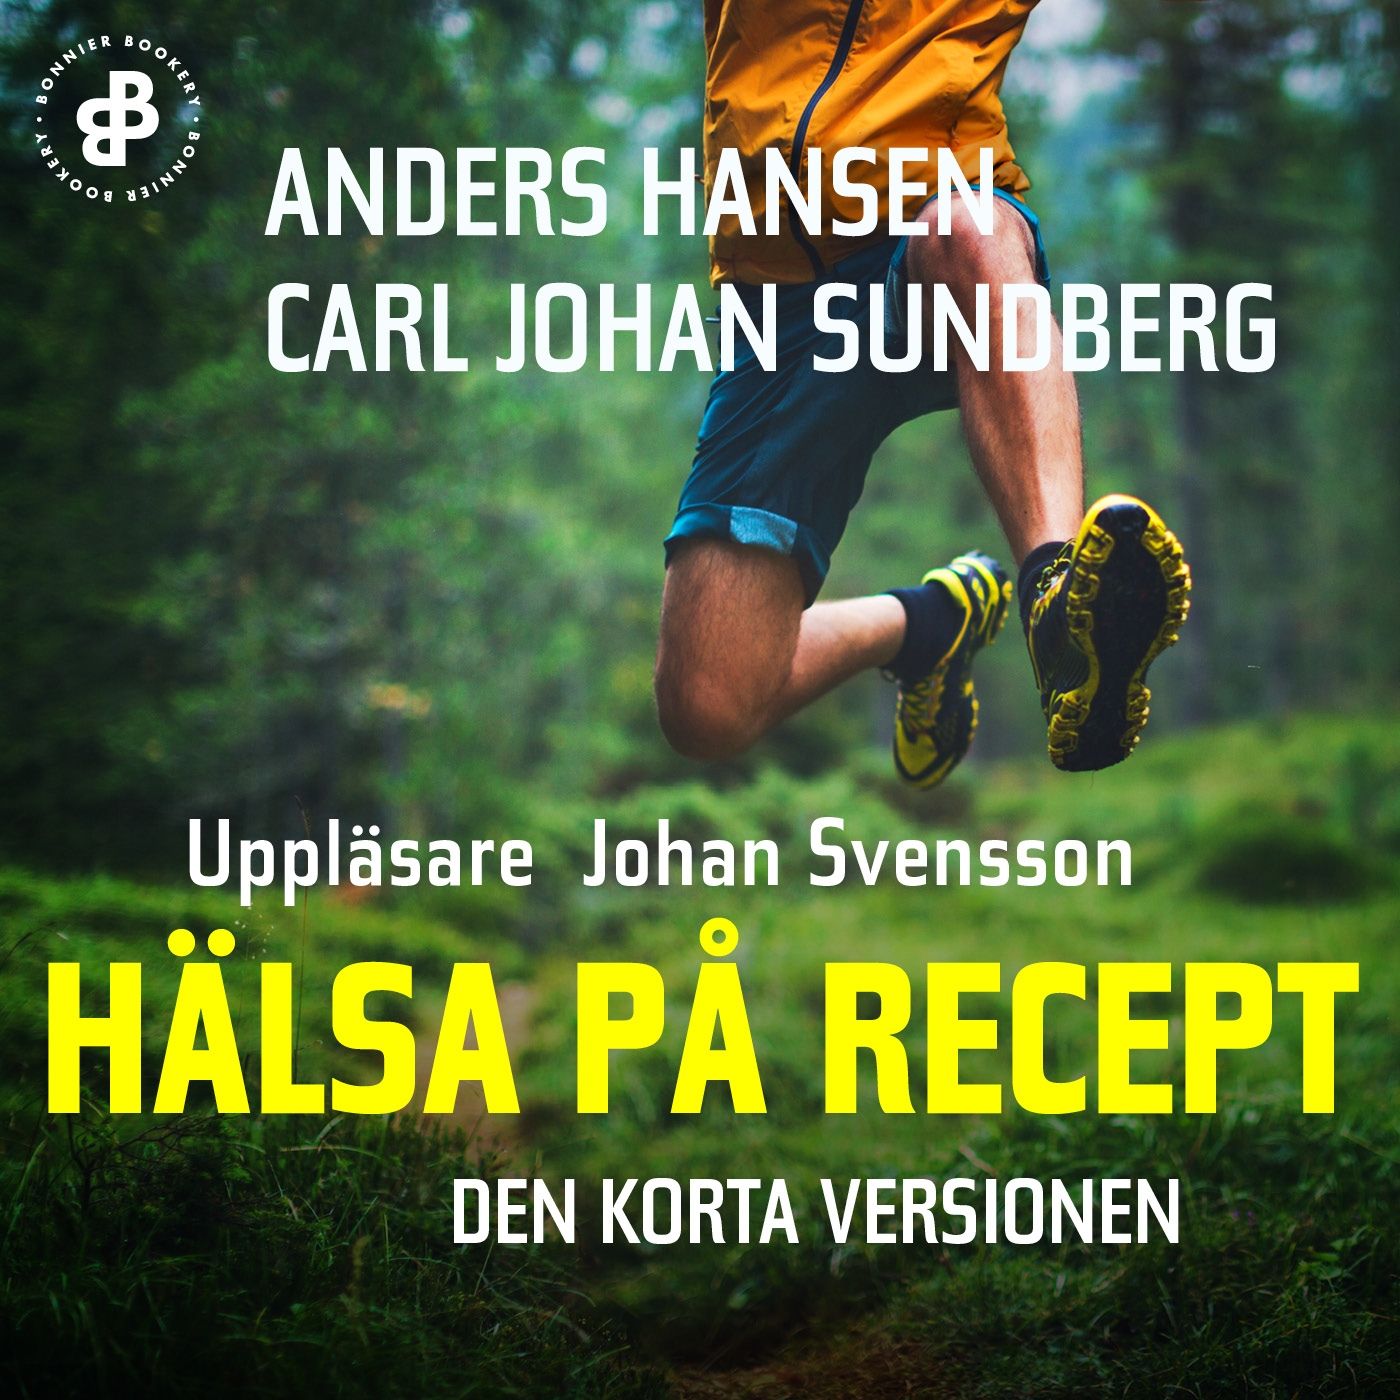 Hälsa på recept. Den korta versionen, audiobook by Anders Hansen, Carl Johan Sundberg